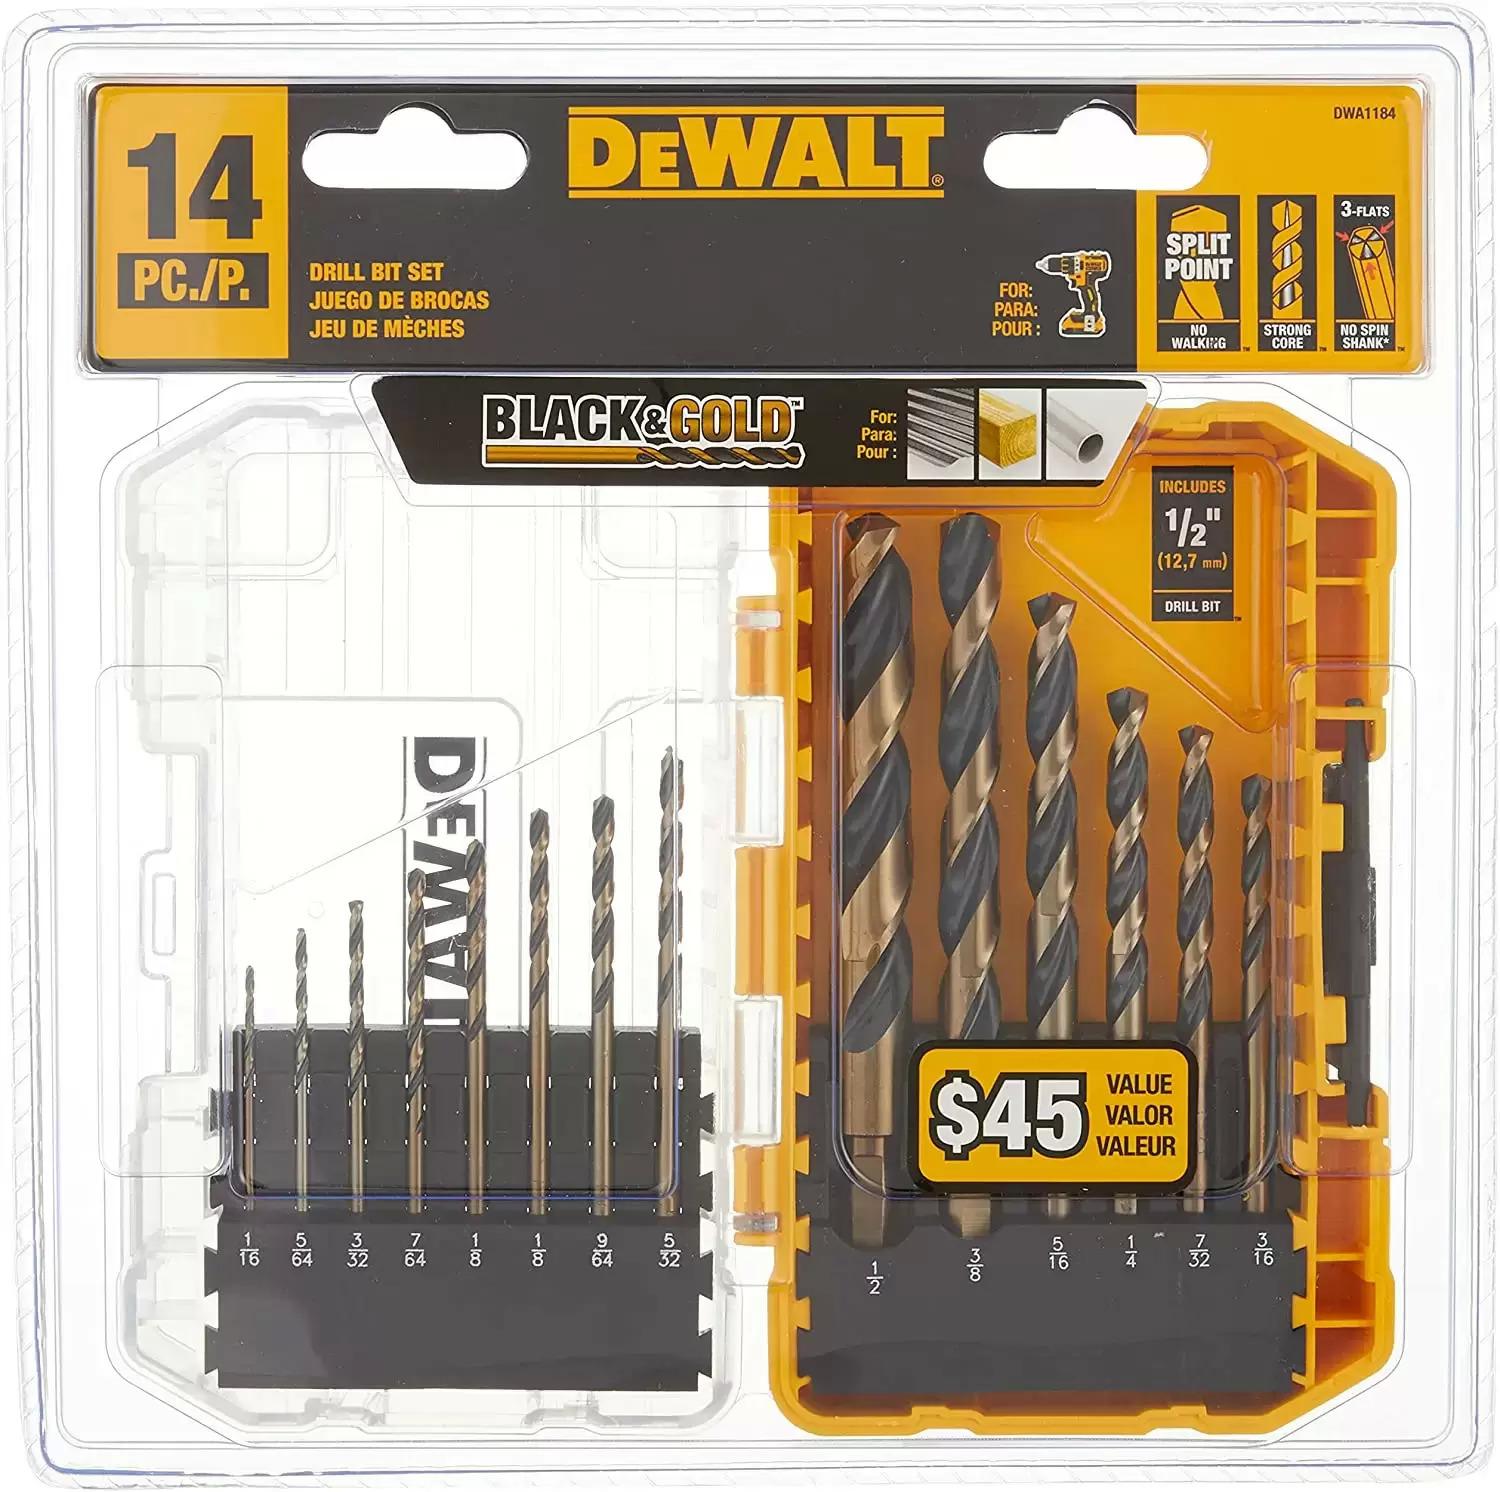 DeWALT DWA1184 Black Gold Drill Bit Set for $9.98